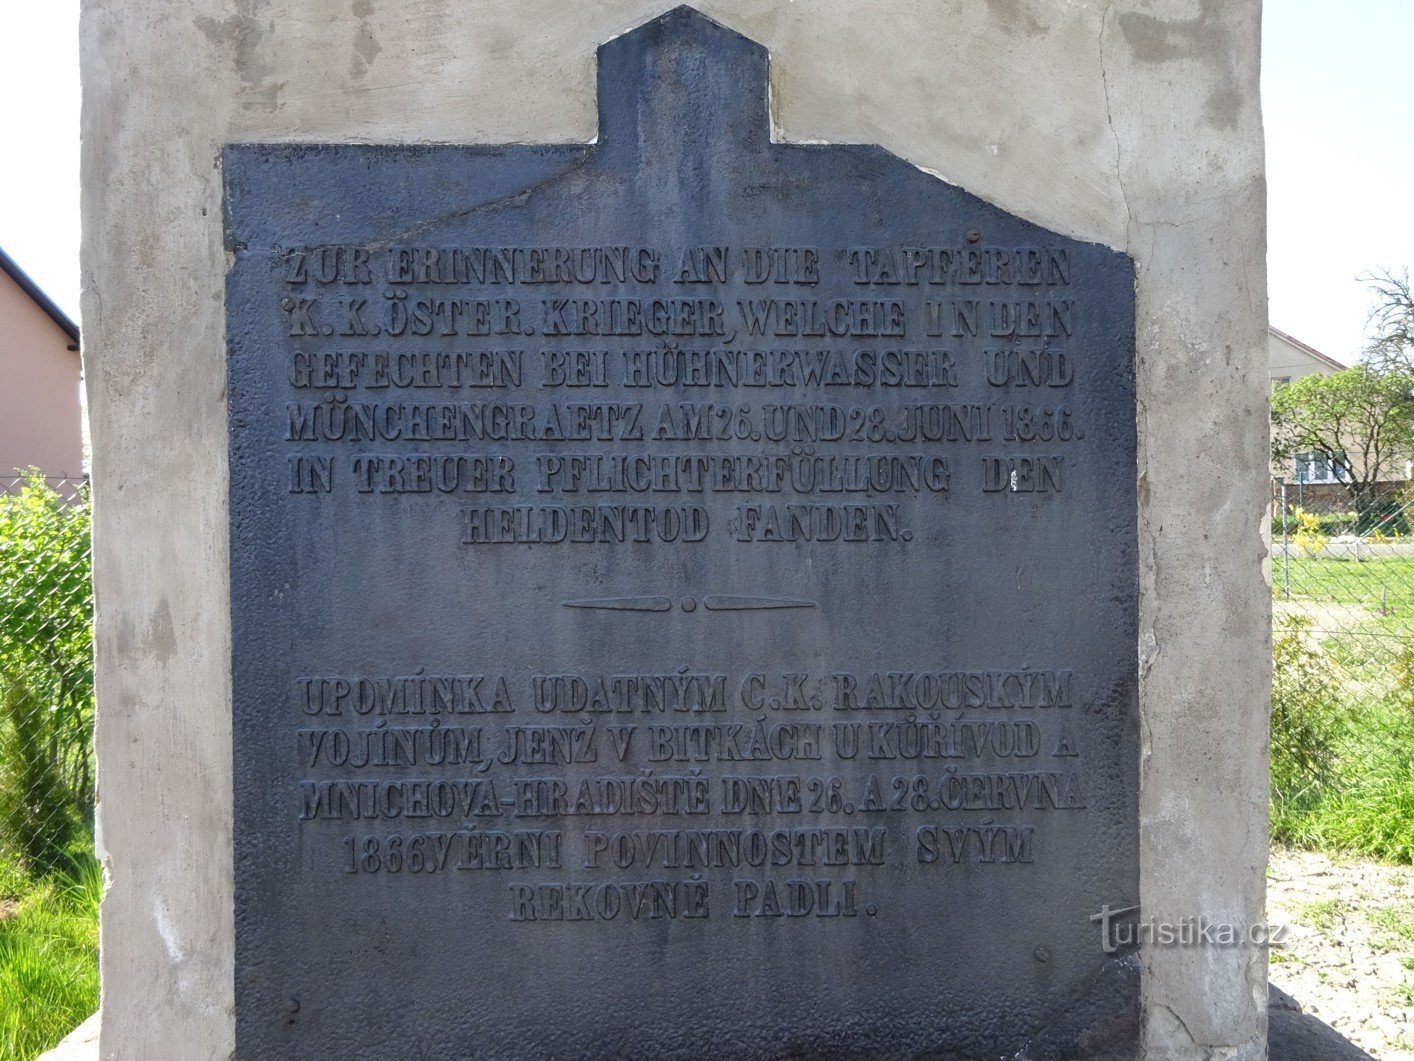 Vuoden 1866 sodan uhrien muistomerkki – Hradiště nad Jizeroun luostari